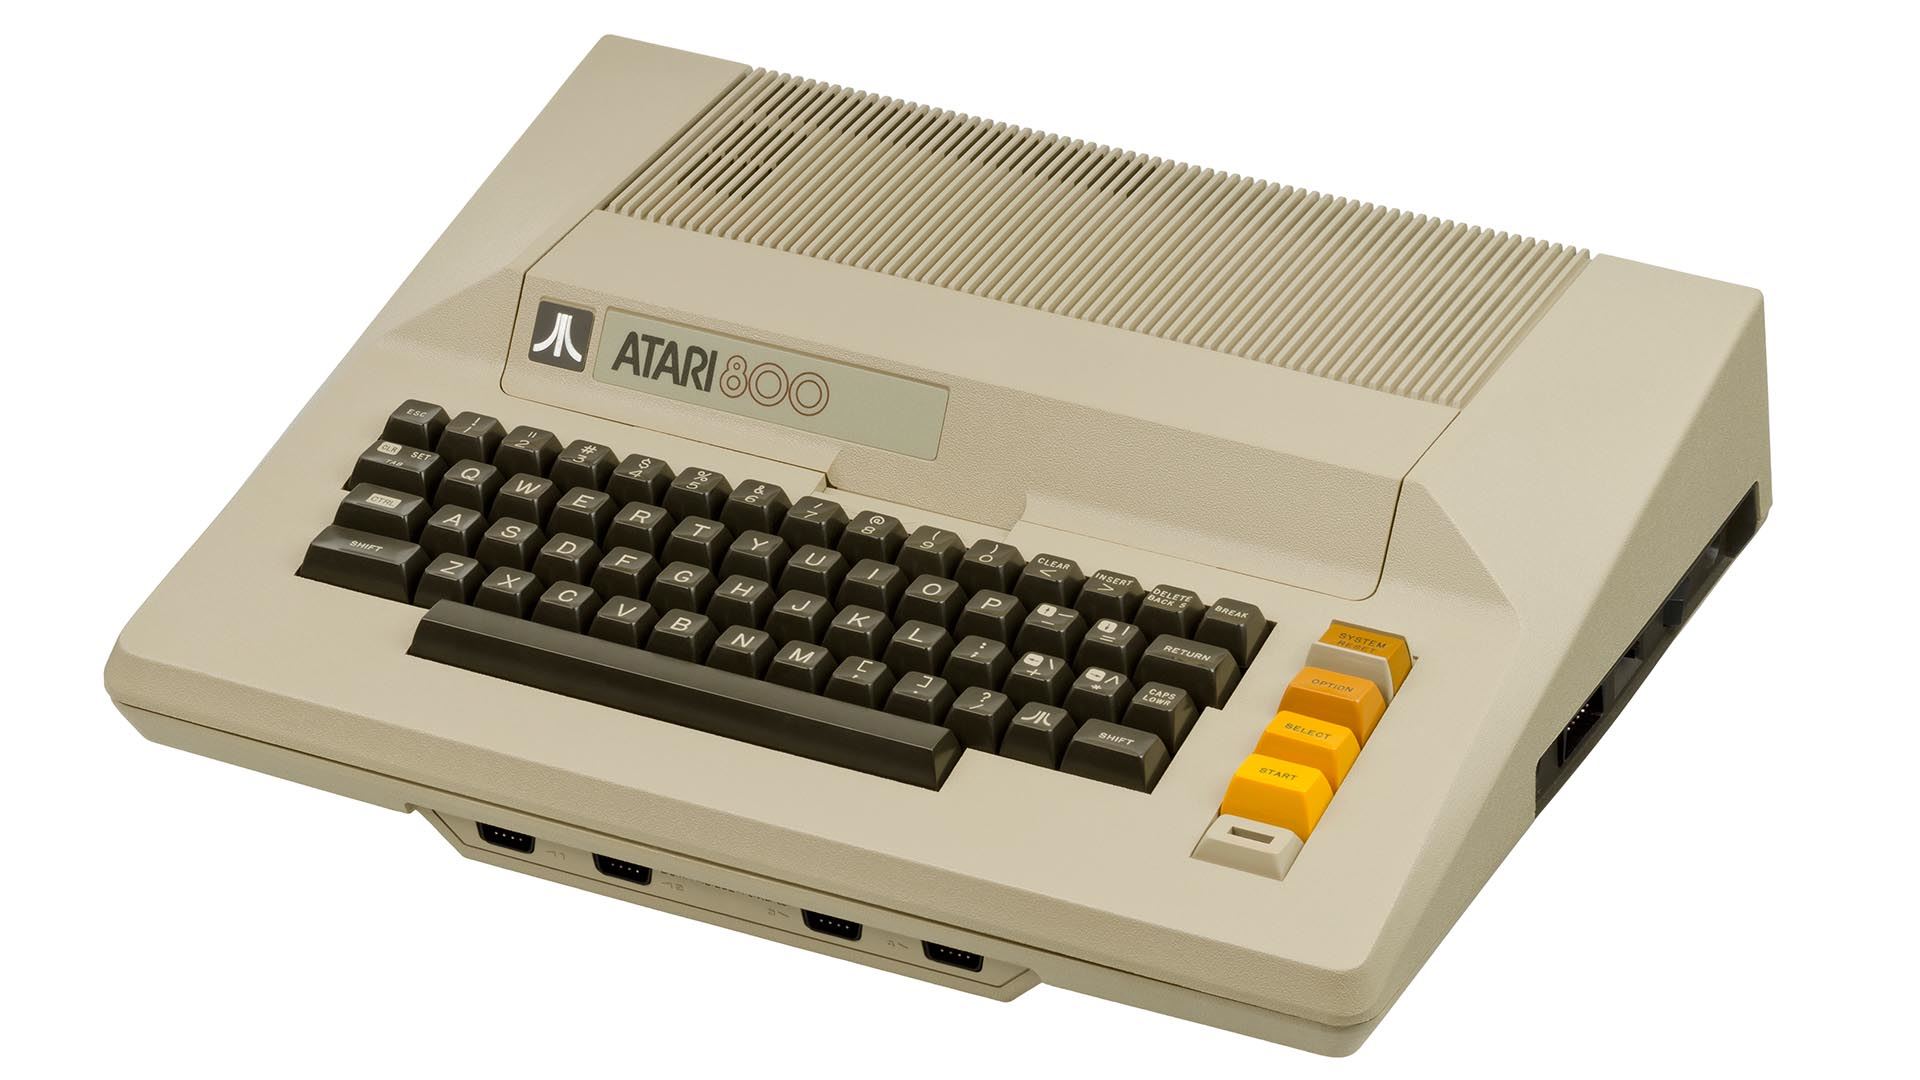 کامپیوتر آتاری 800